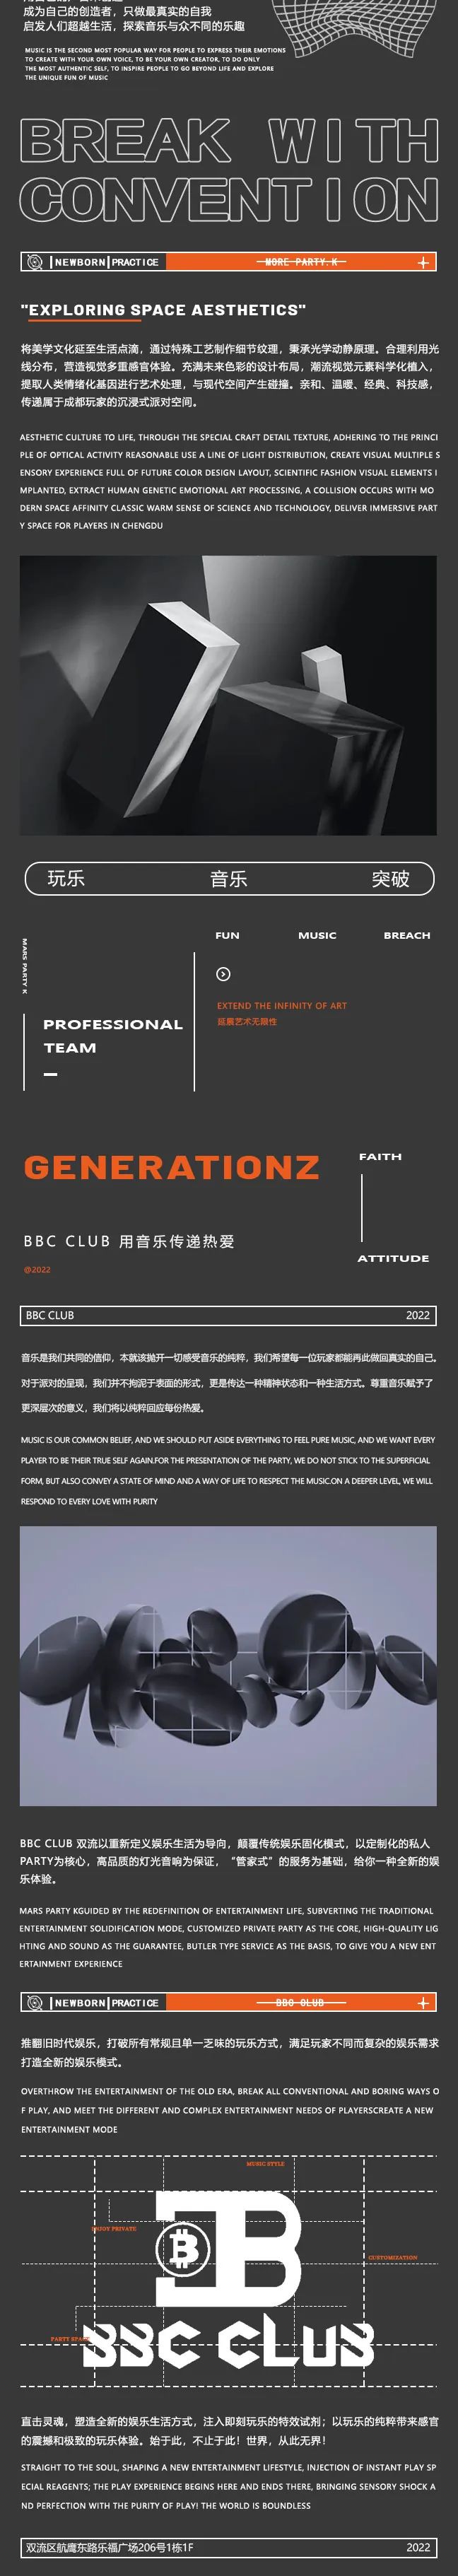 BBC CLUB | 打造全新风标 · 点亮城市之光，即将揭开新视界-成都BBC CLUB/比比瑟酒吧